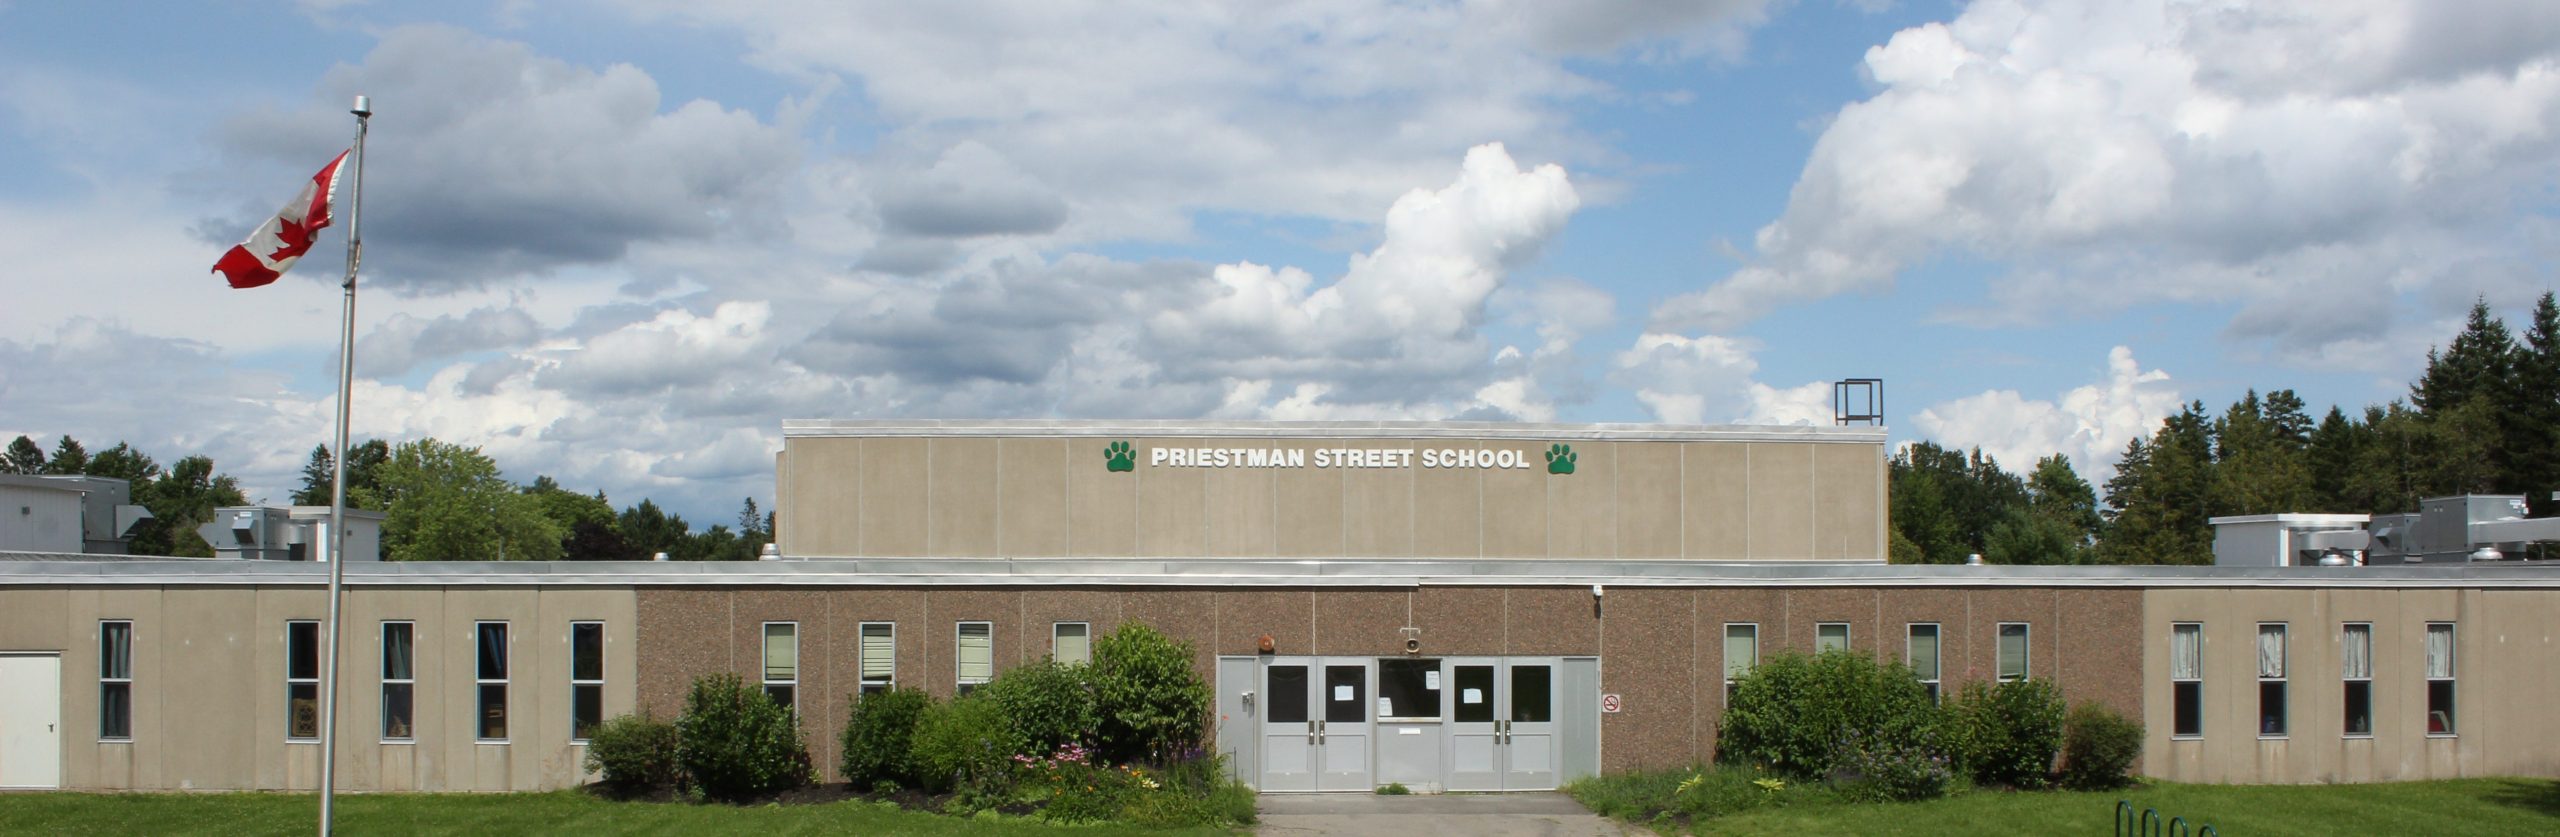 Priestman Street Elementary School.